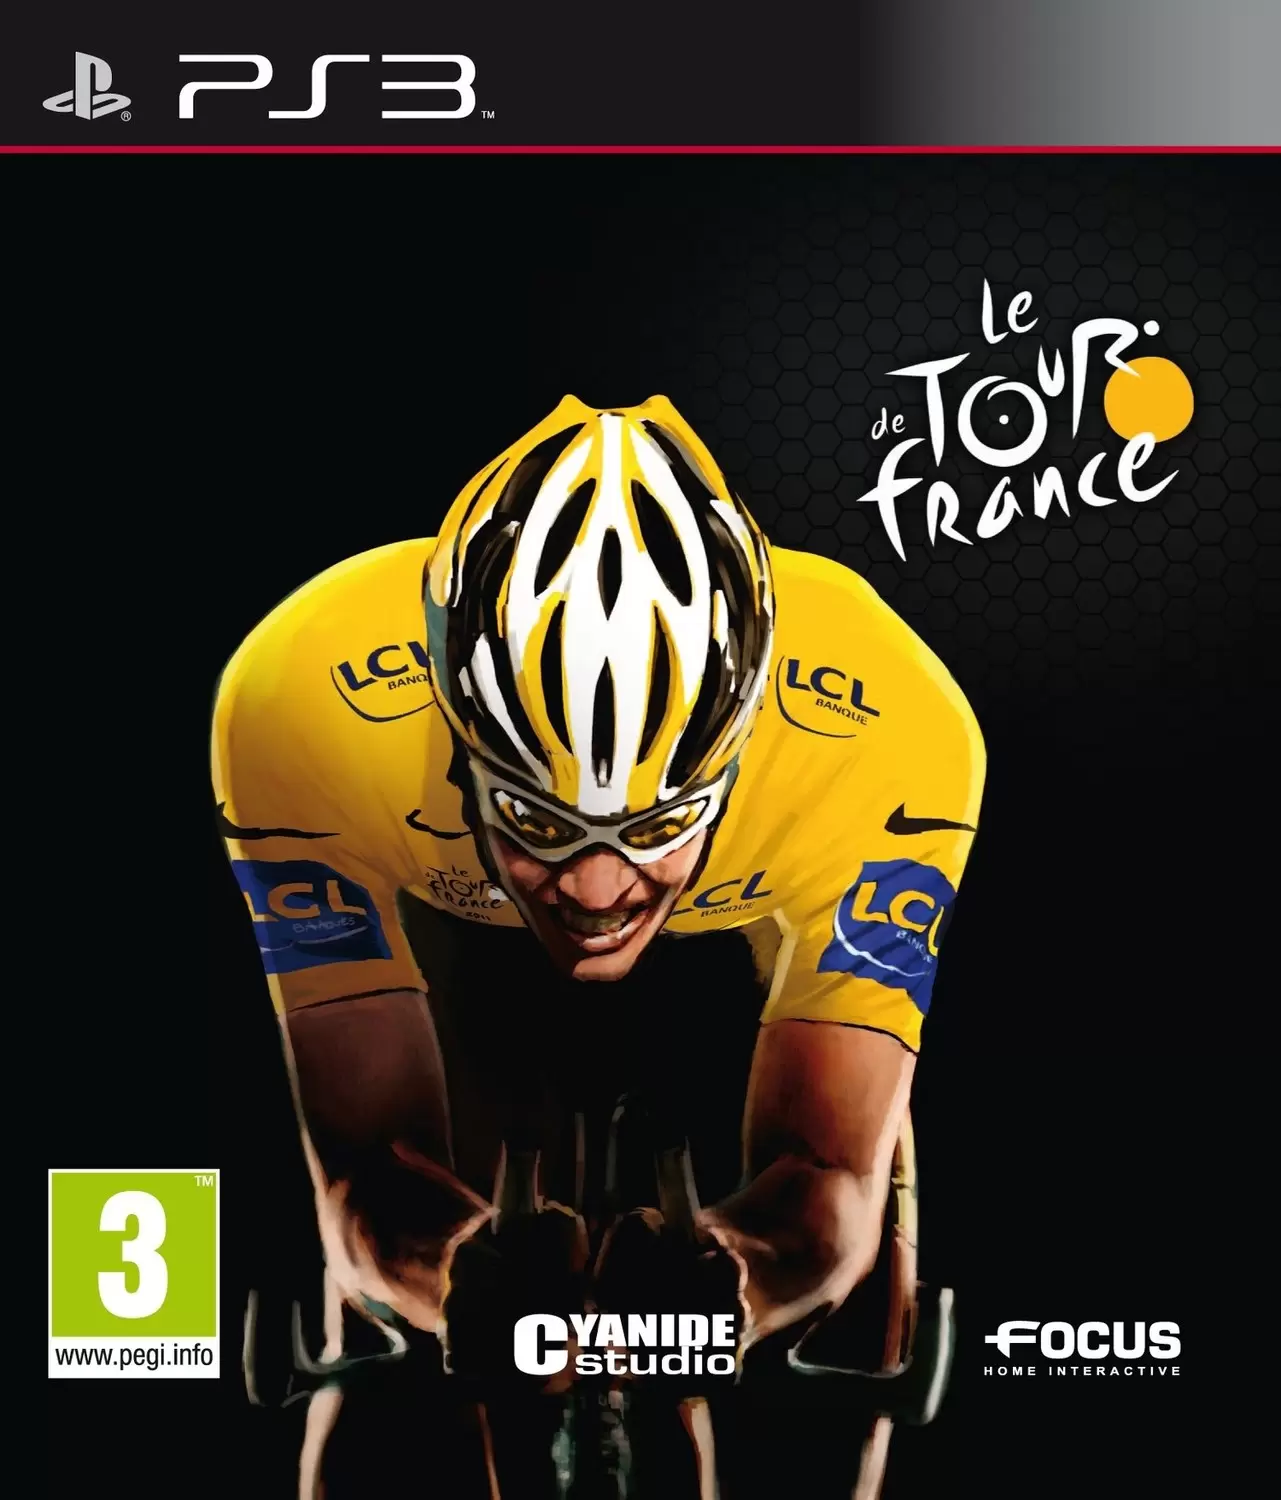 PS3 Games - Le Tour de France